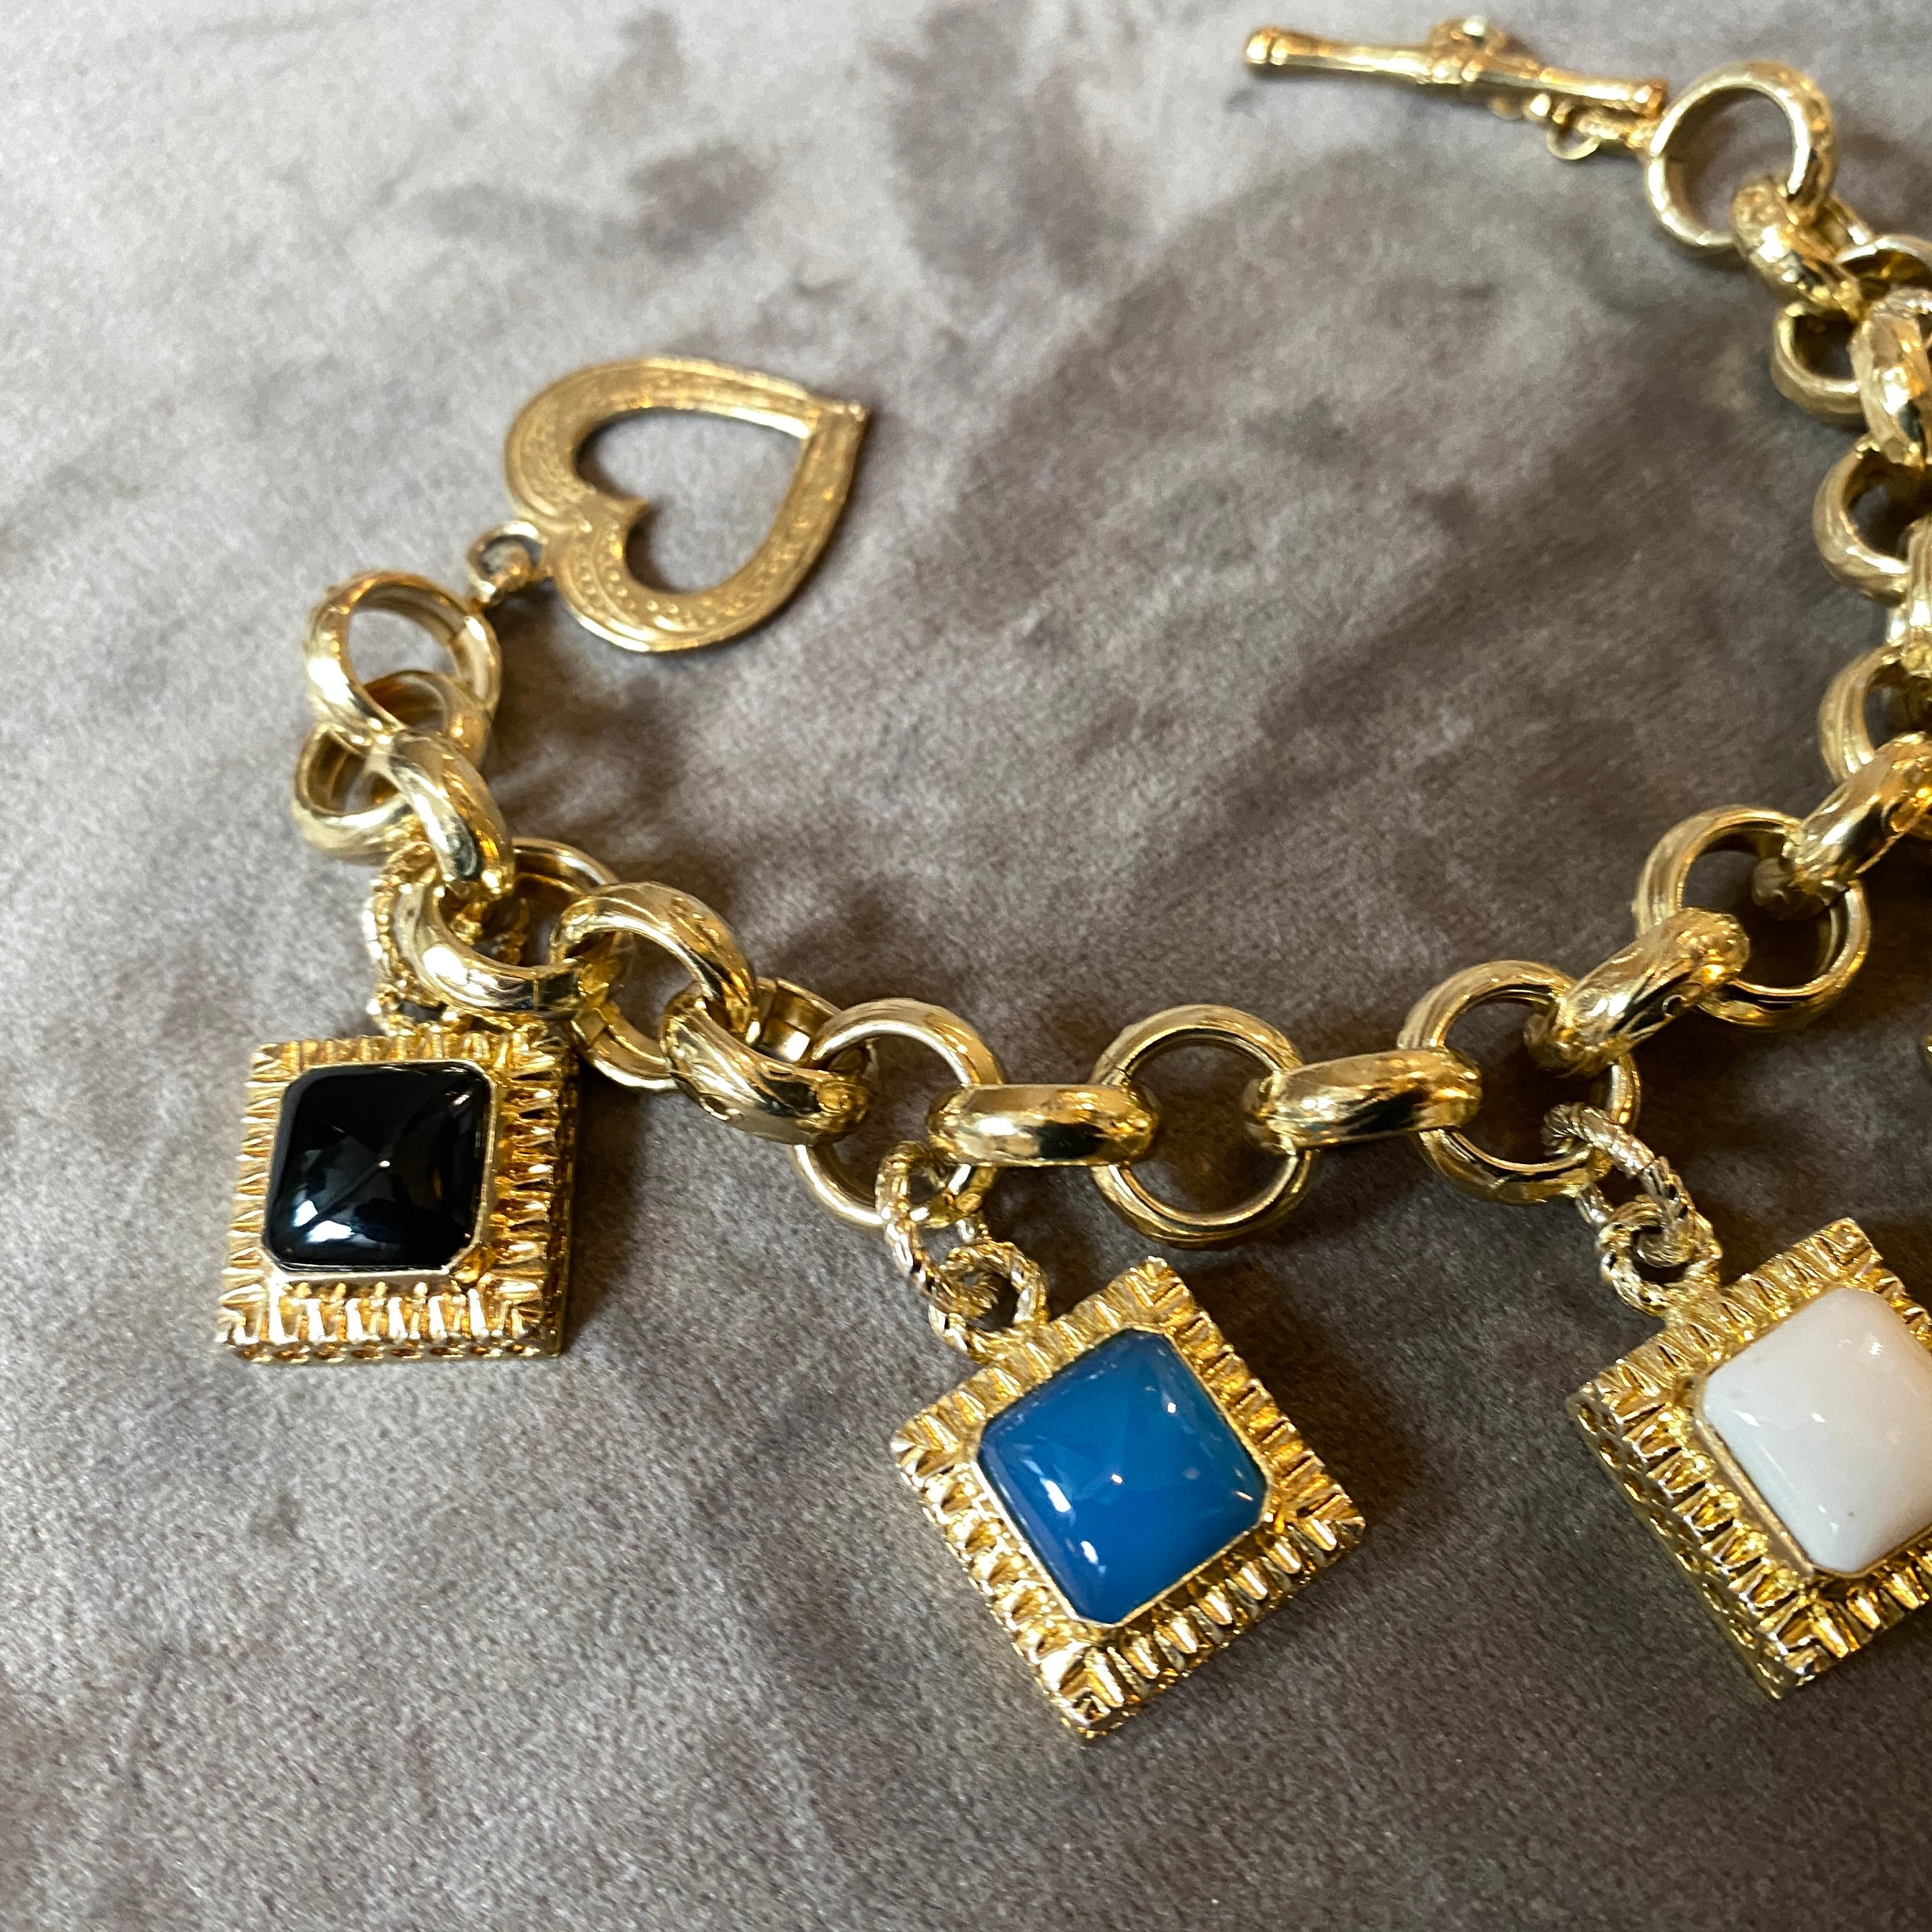 Ein handgefertigtes Charme-Armband aus Italien, erstaunliche Oberflächen, die Halbedelsteine sind Achat, Onyx und Karneol. Er wurde in den neunziger Jahren von Anomis in Italien entworfen und hergestellt. Dieses Armband ist ein schönes und